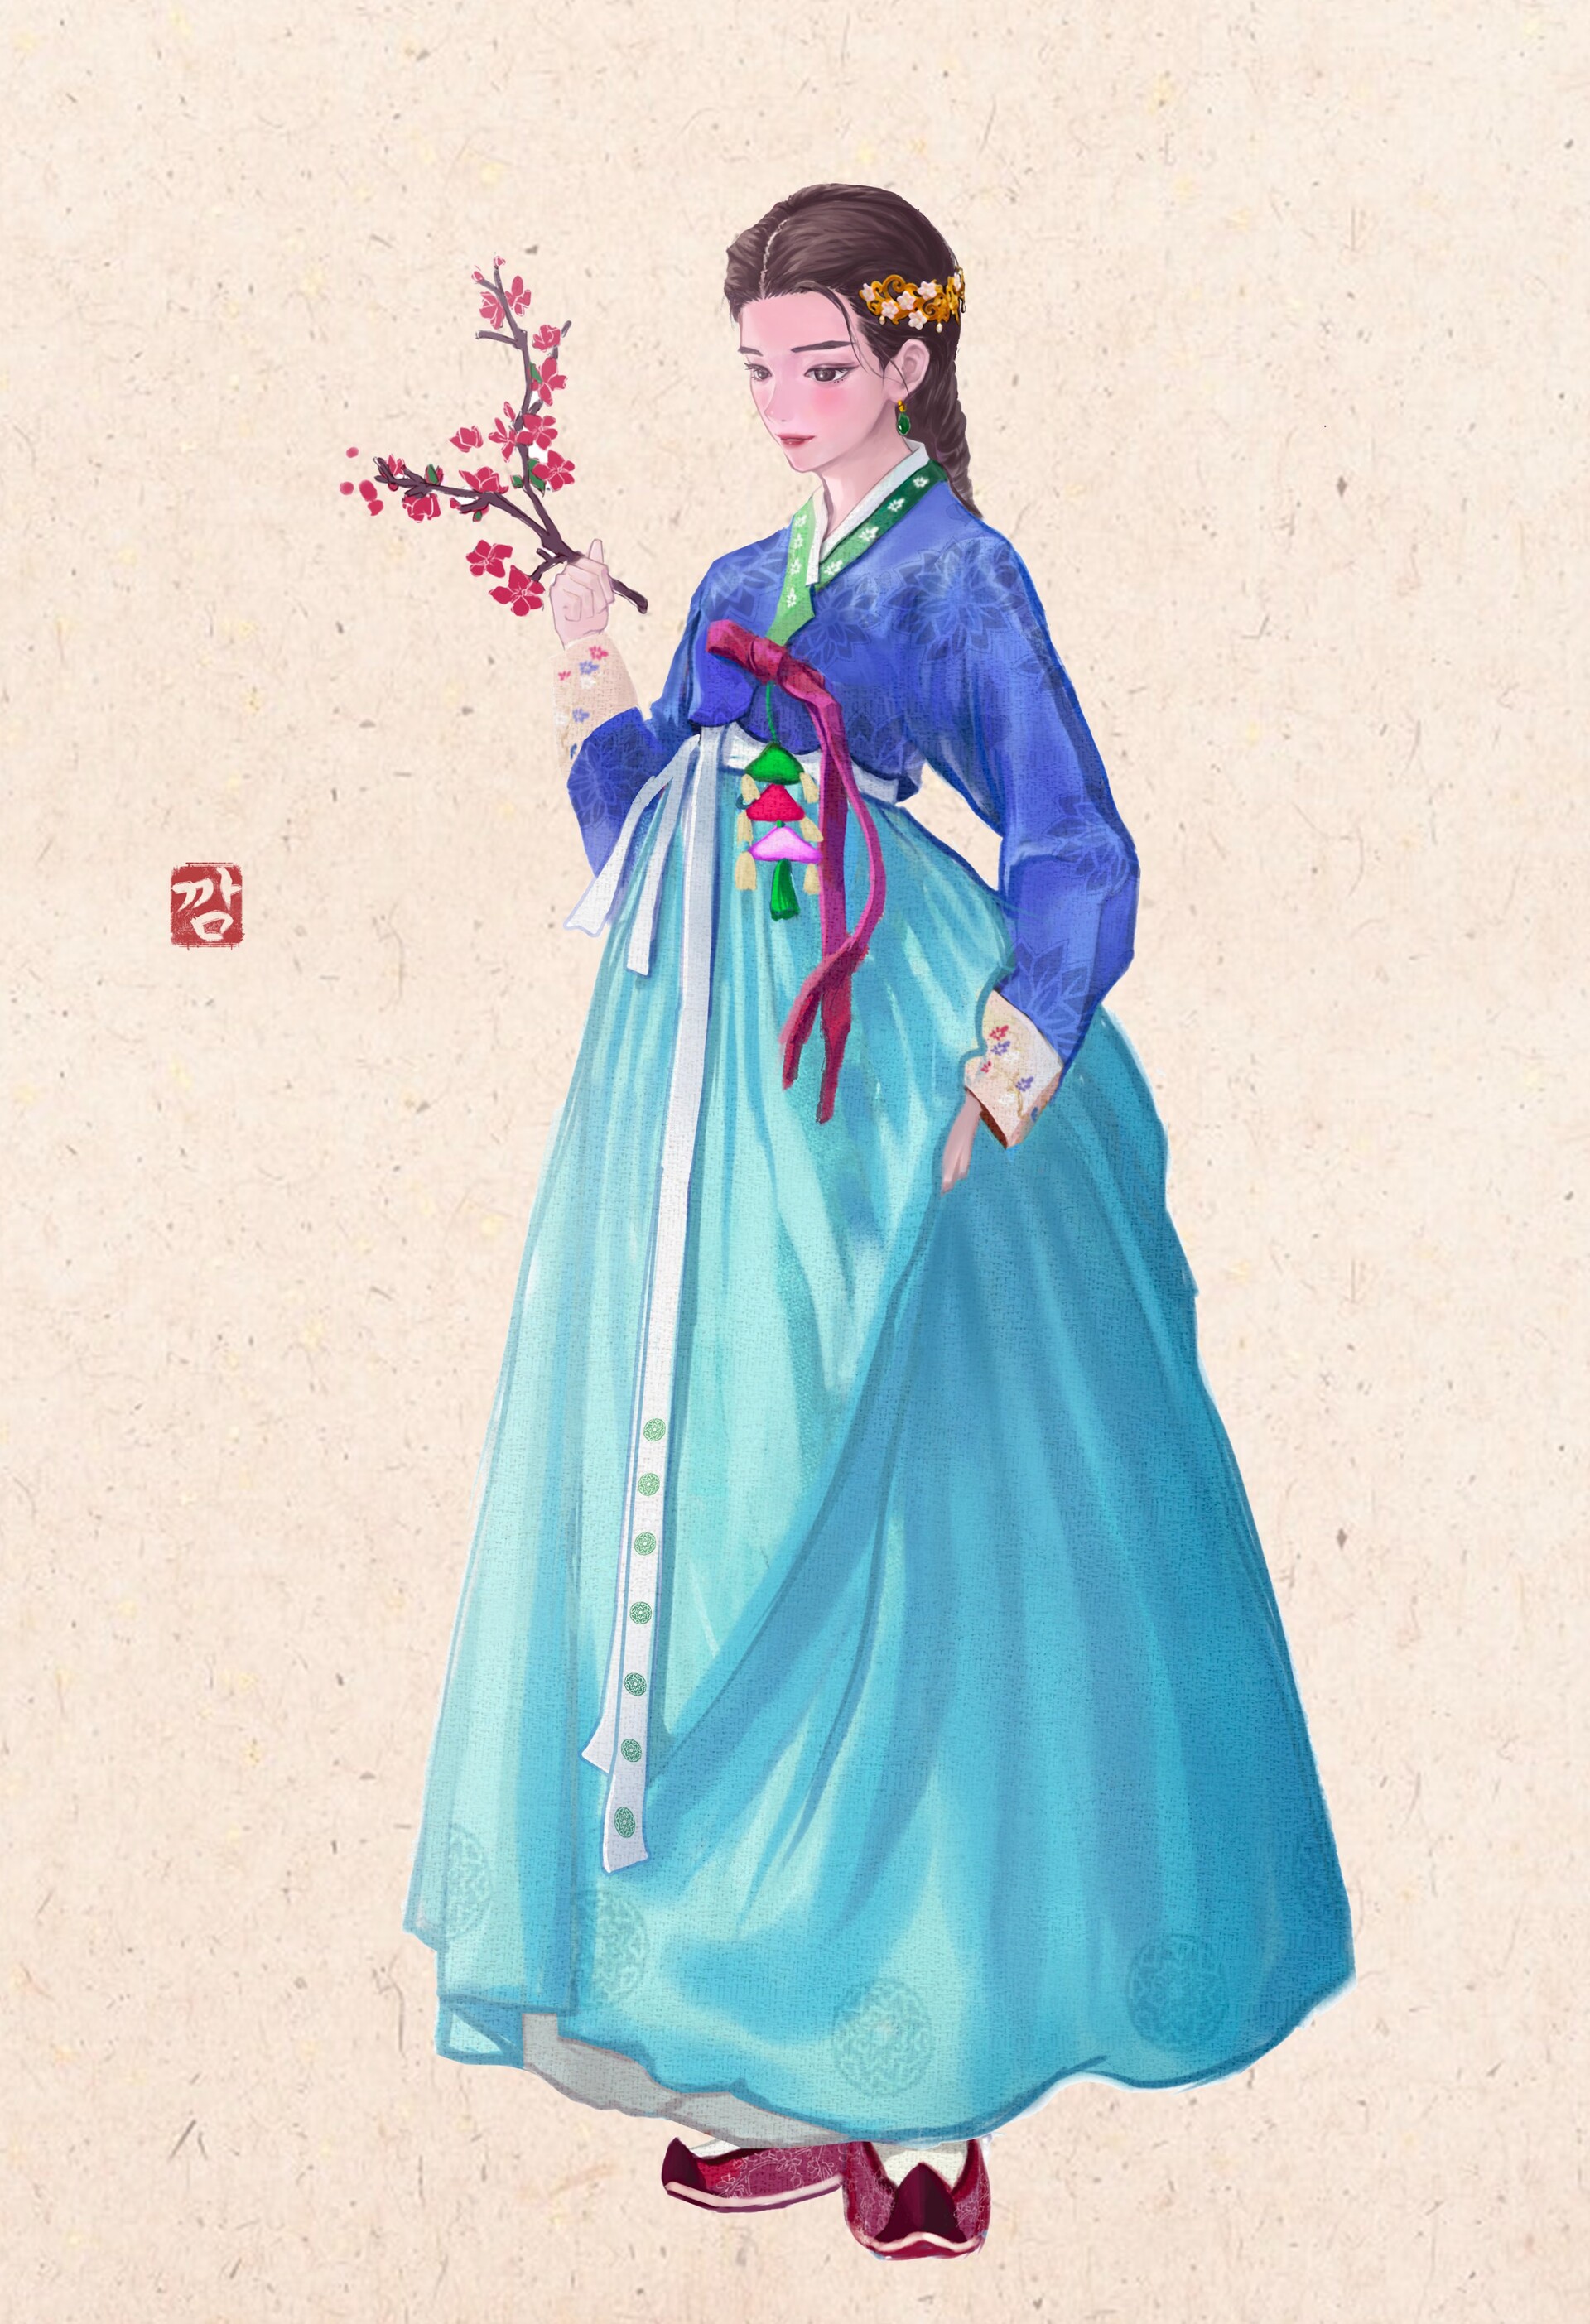 ArtStation - hanbok girl